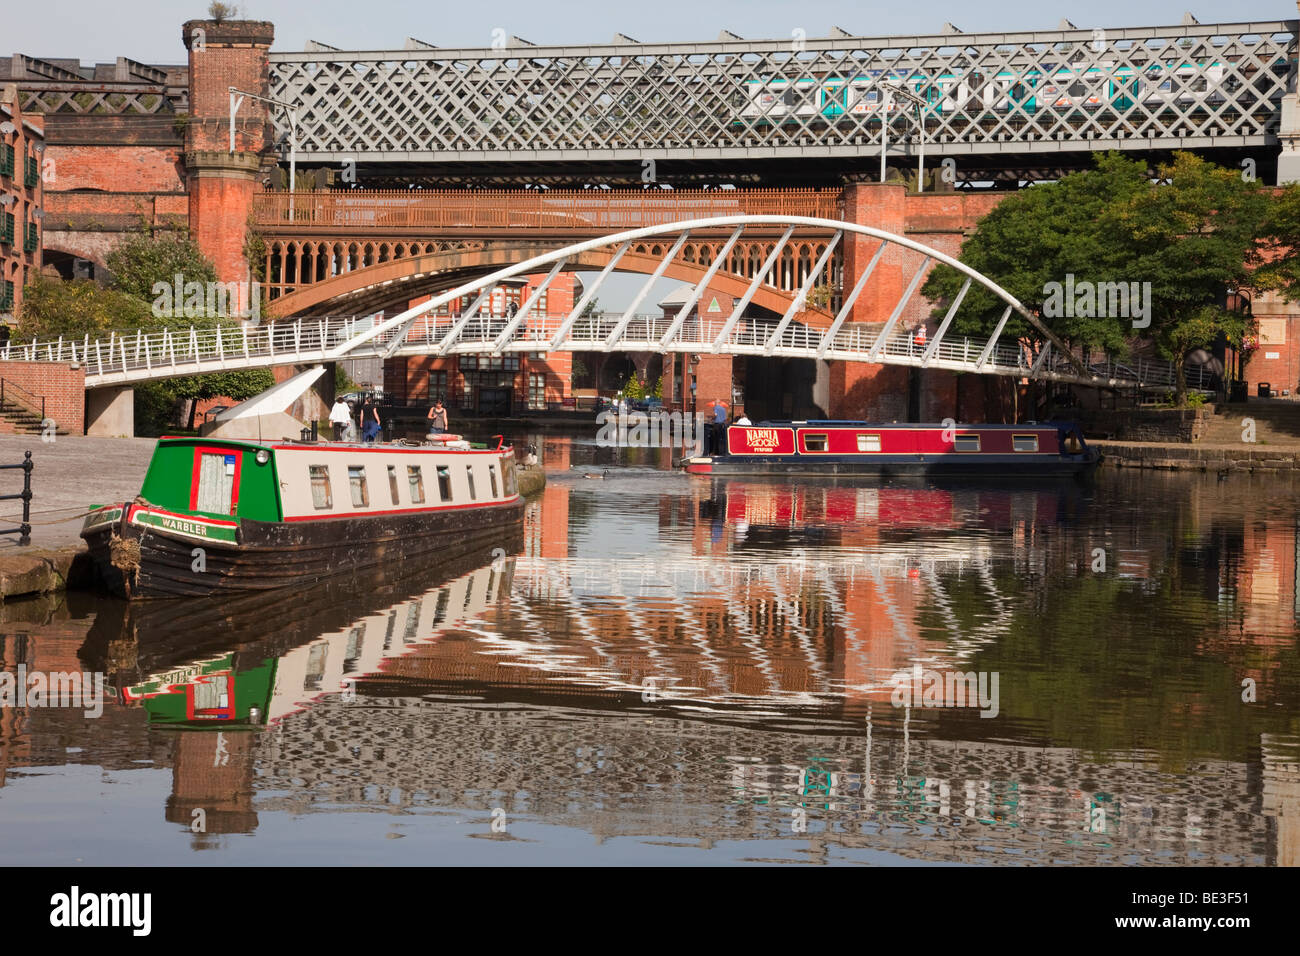 Der Bridgewater Canal Basin reflektierende narrowboats und Kaufleute Brücke in Conservation Area. Castlefield Urban Heritage Park, Manchester, England, Großbritannien Stockfoto